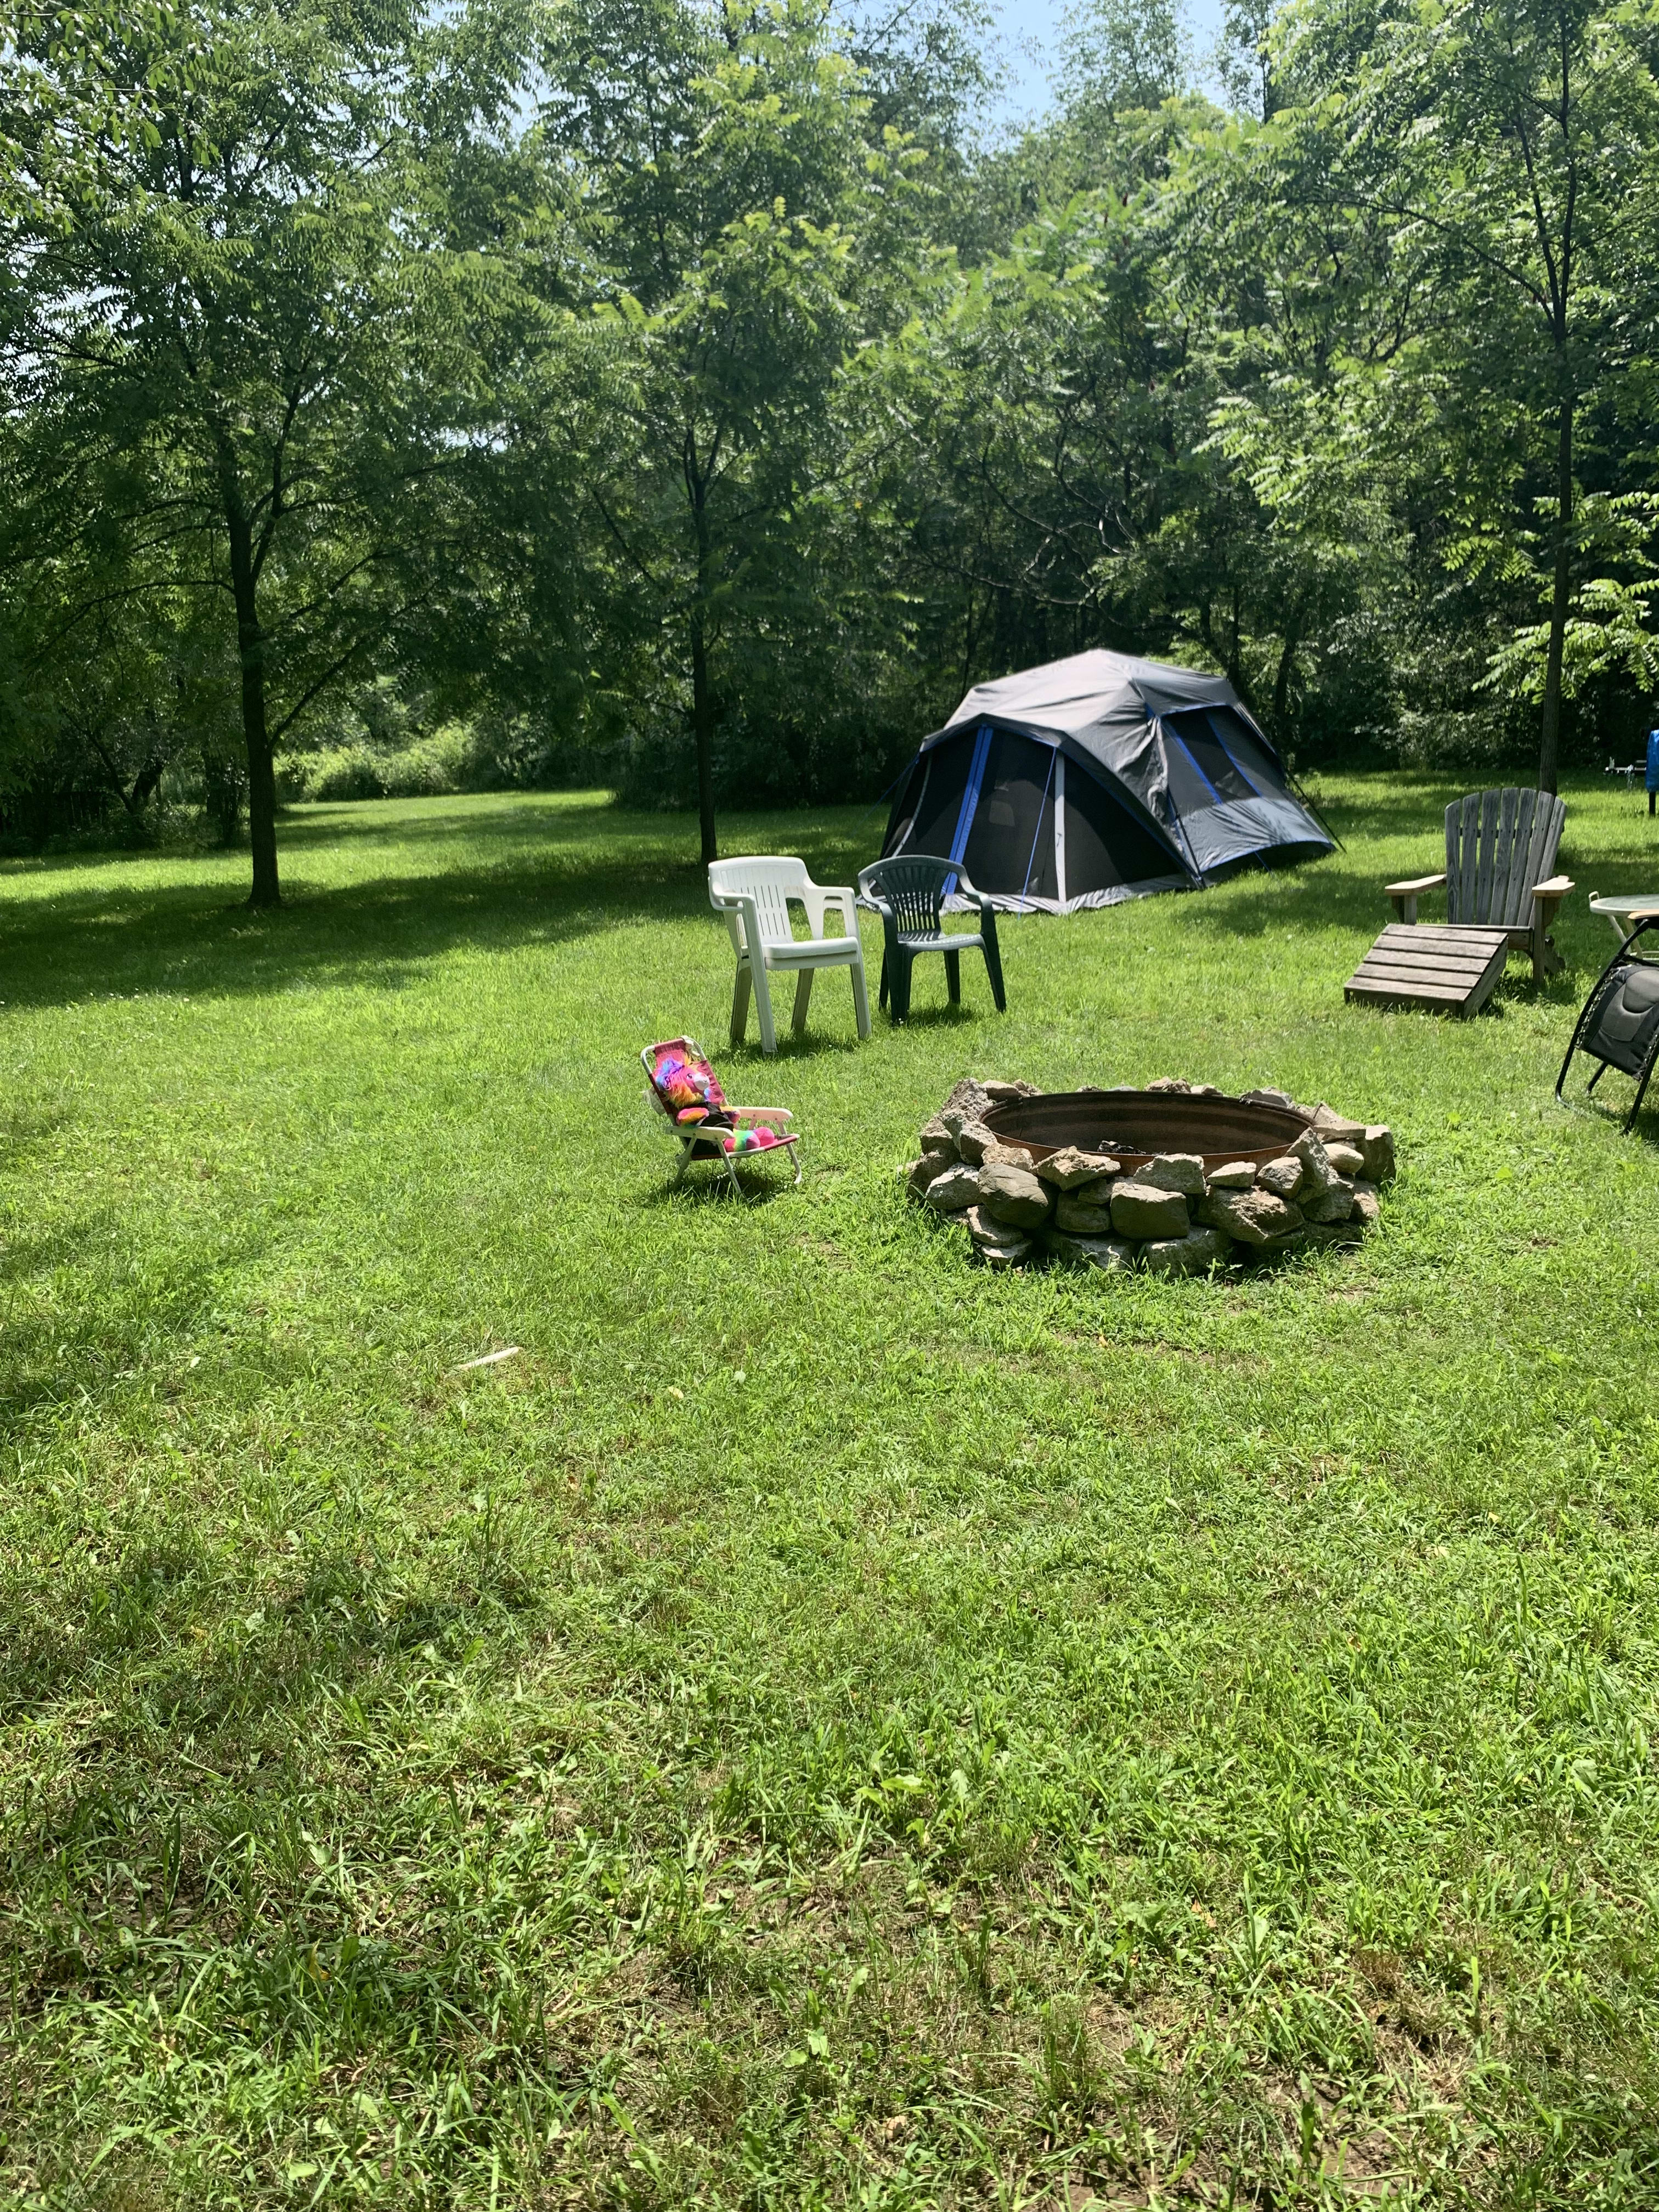 Gypsy camp 2